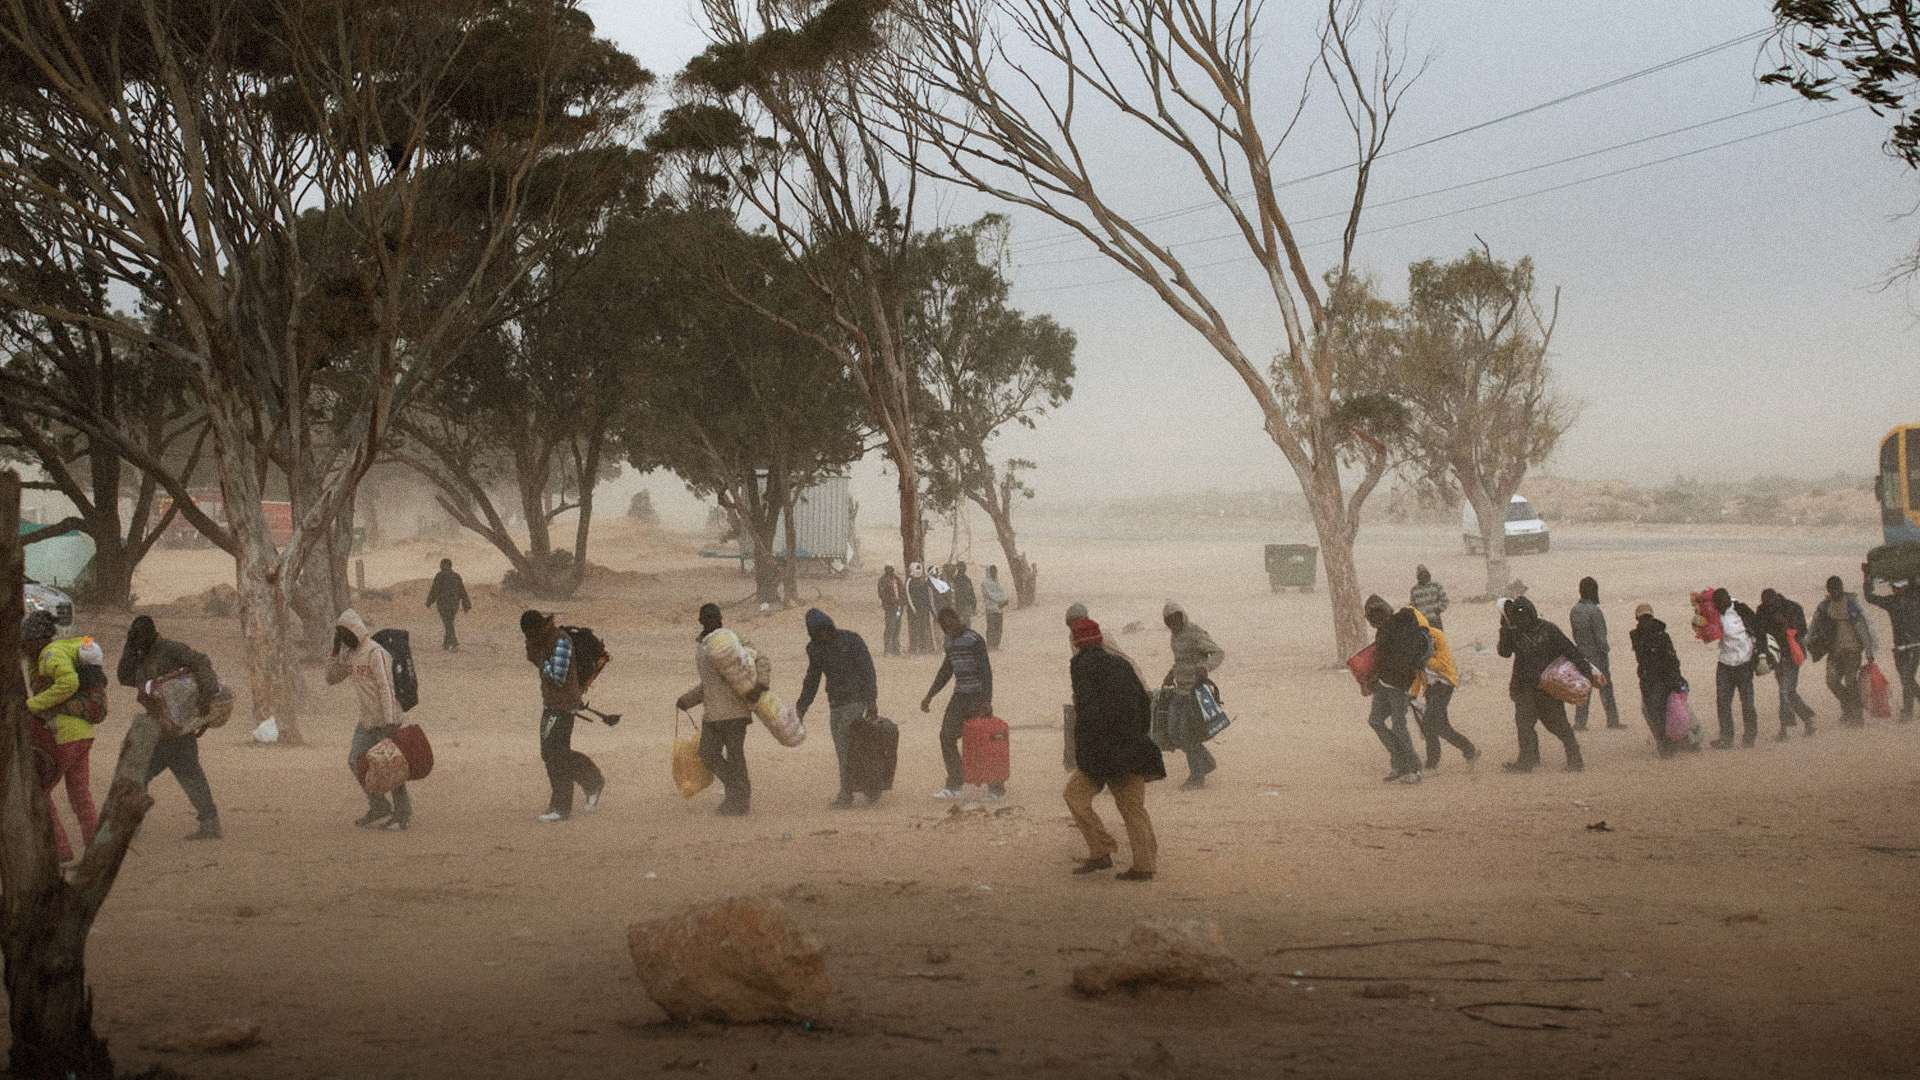  صورة سعيّد يضع المهاجرين في الصحراء إلى حين وصول مساعدات أوروبية كافية لقتلهم ودفنهم